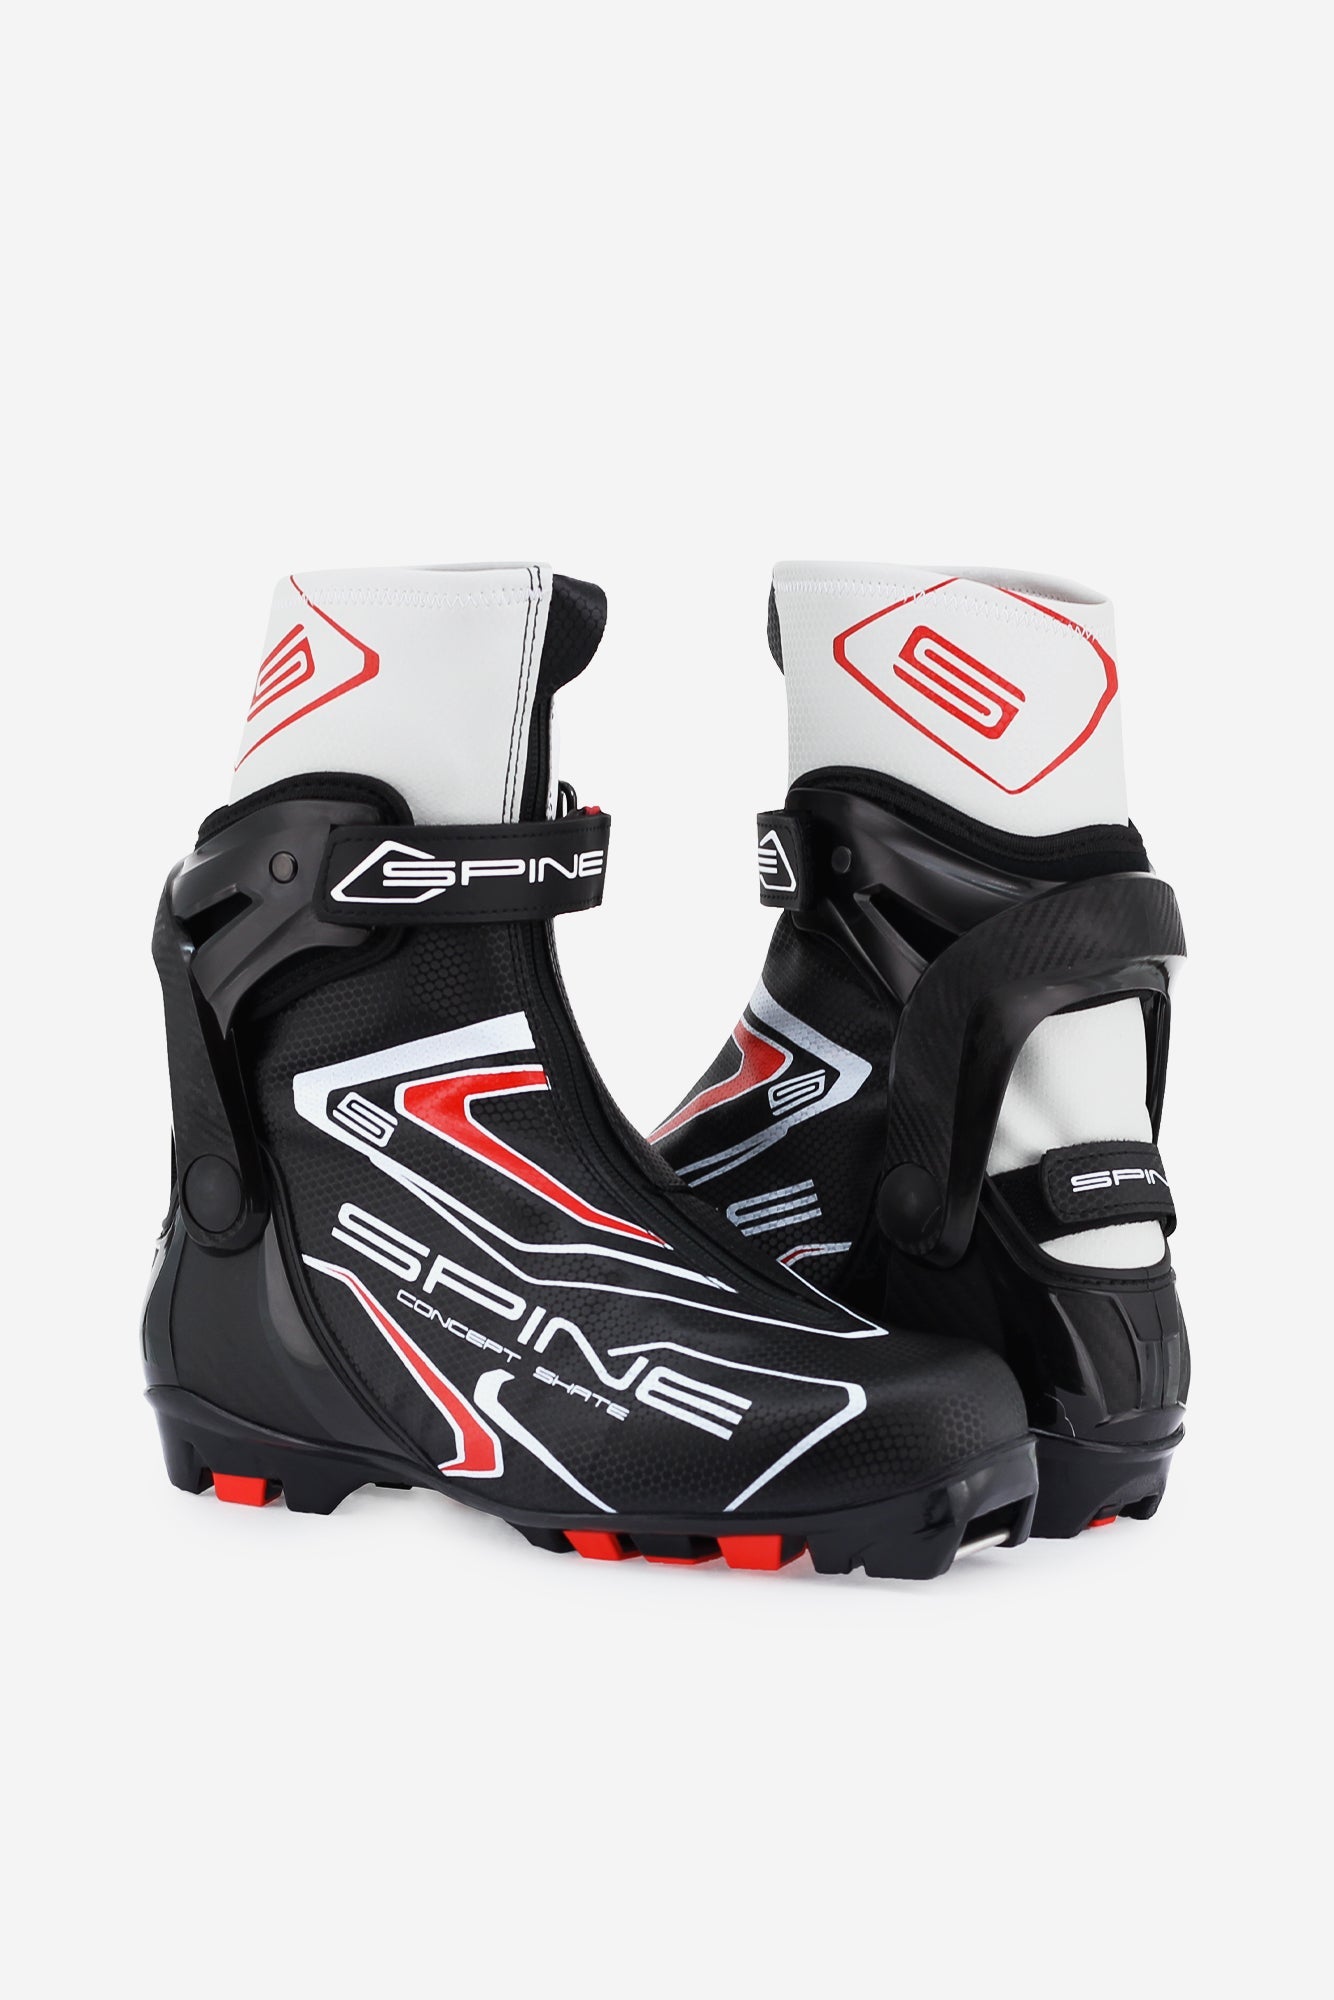 Concept Skate 296 (NNN) Nordic Ski Boots Angle 1